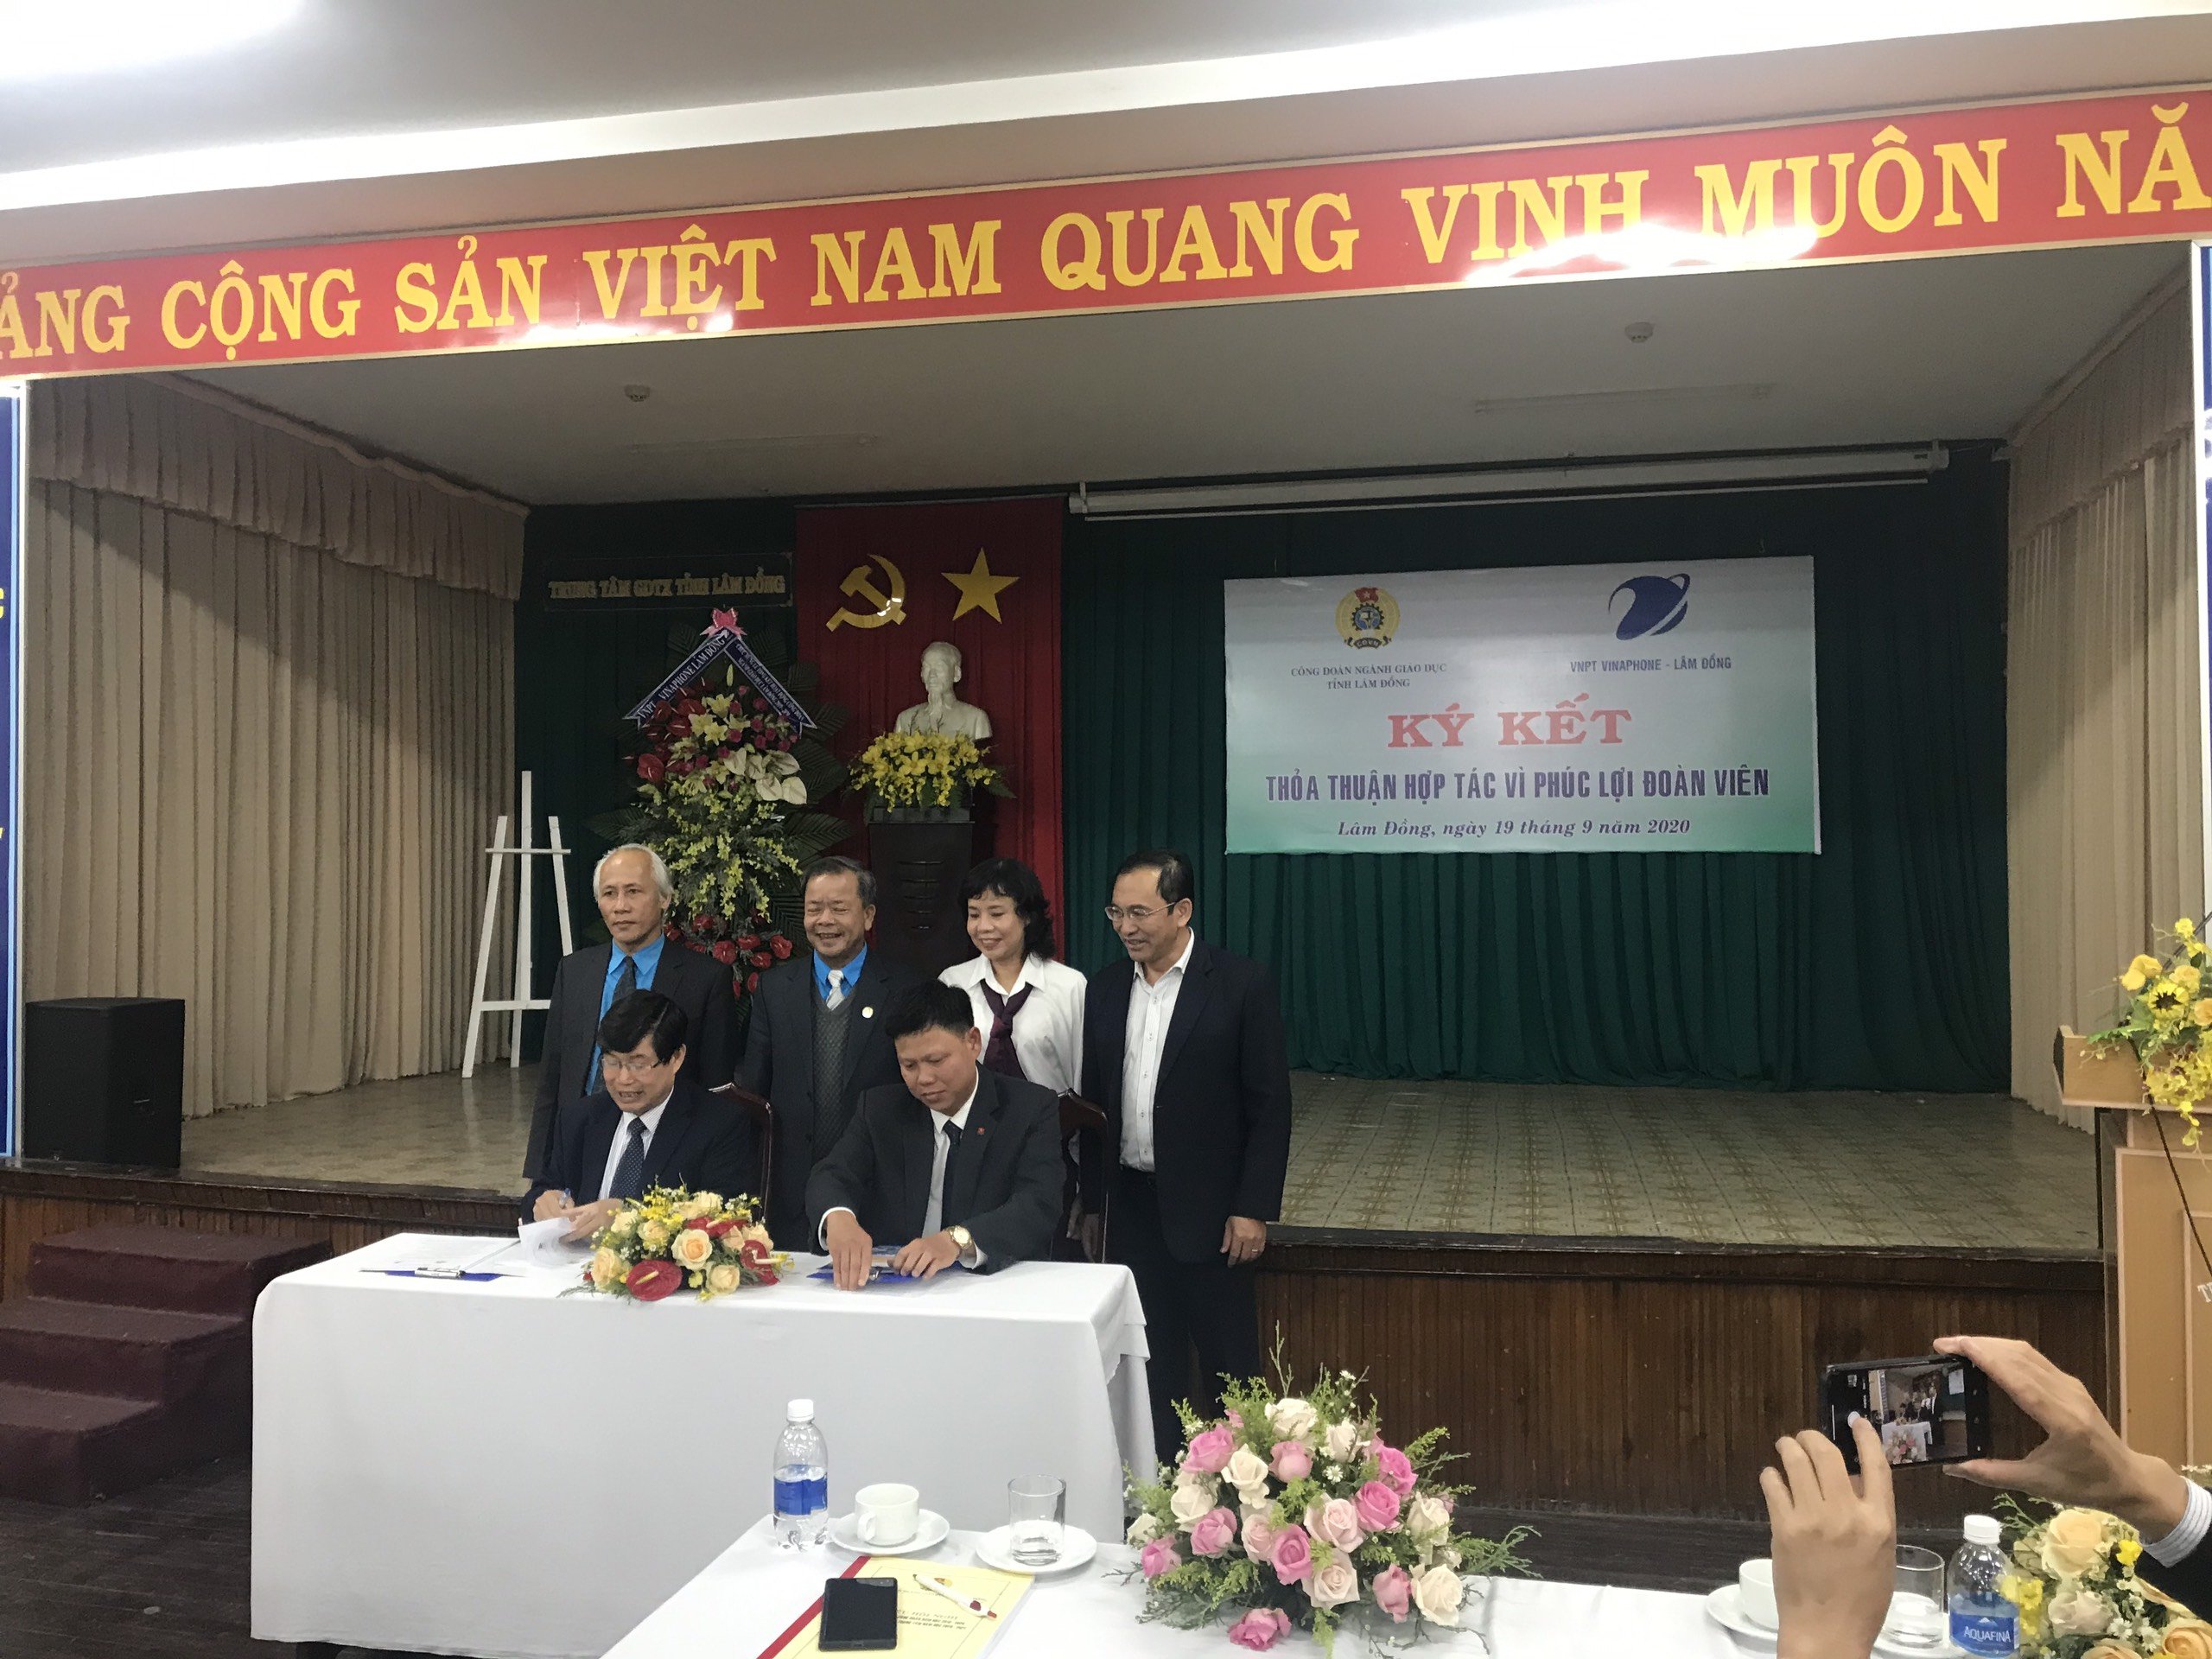 Ký kết thỏa thuận hợp tác với VNPT Lâm Đồng